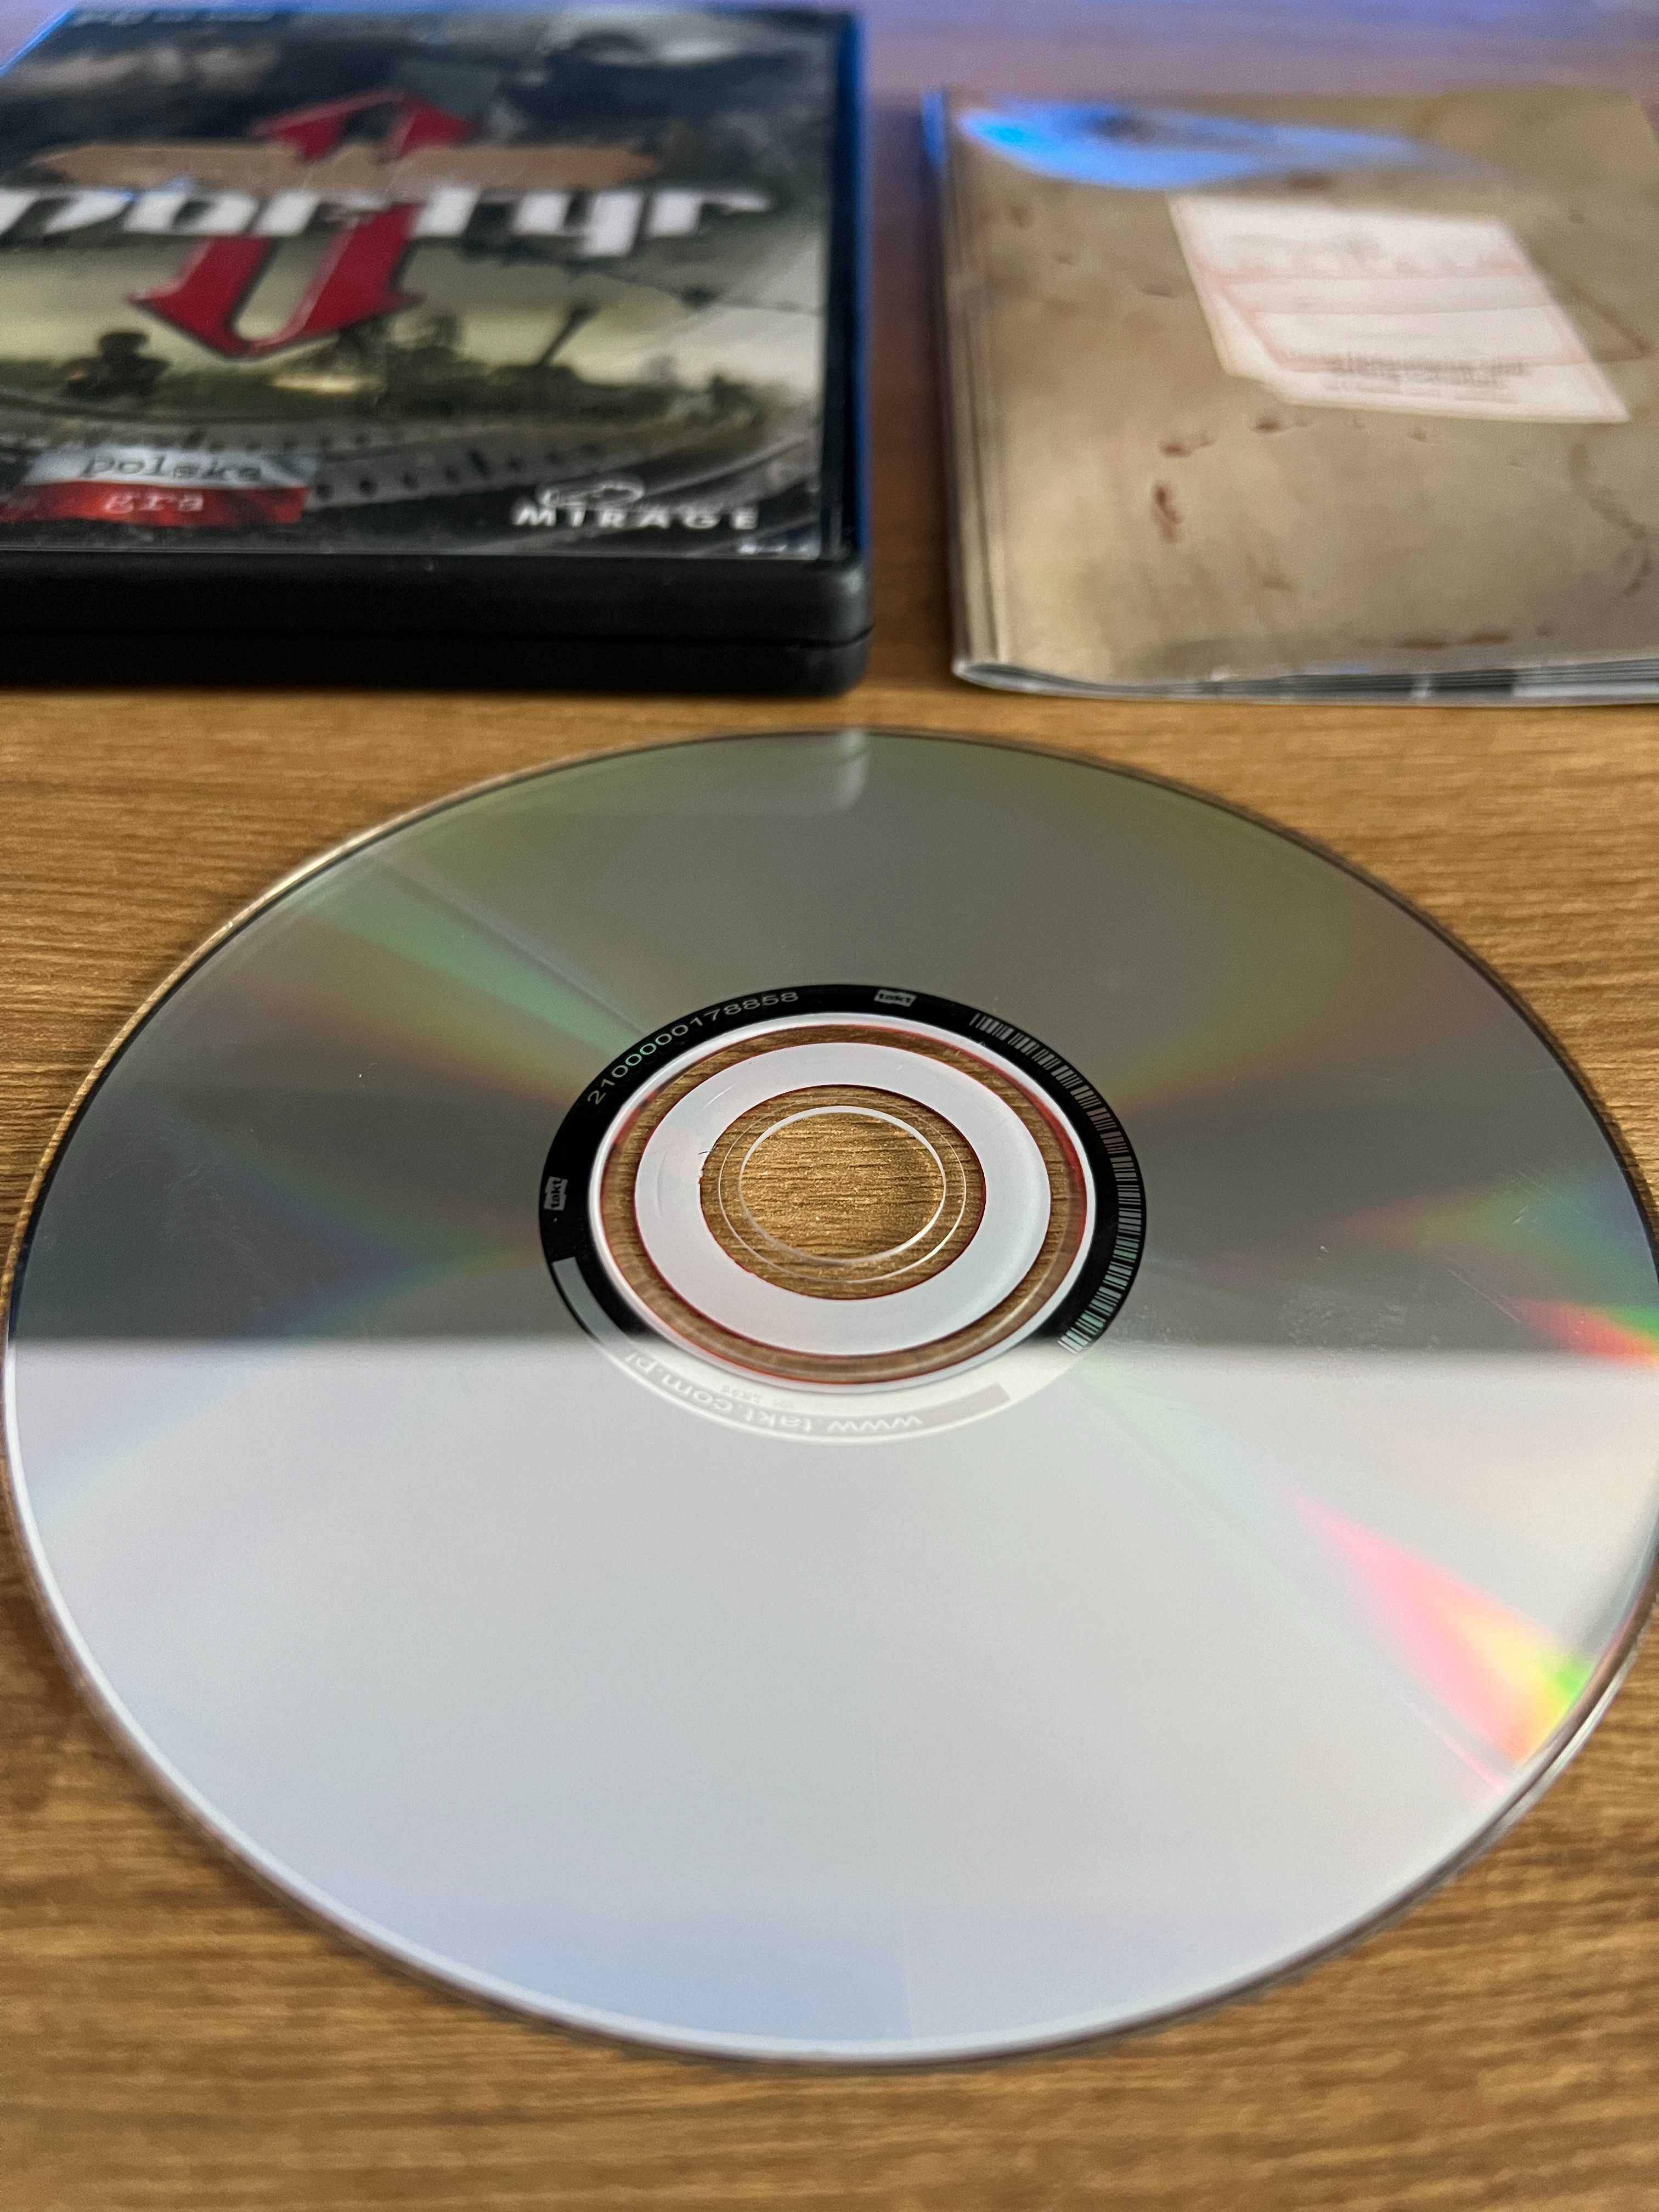 Mortyr II 2 gra (PC PL 2004) CD BOX premierowe kompletne wydanie